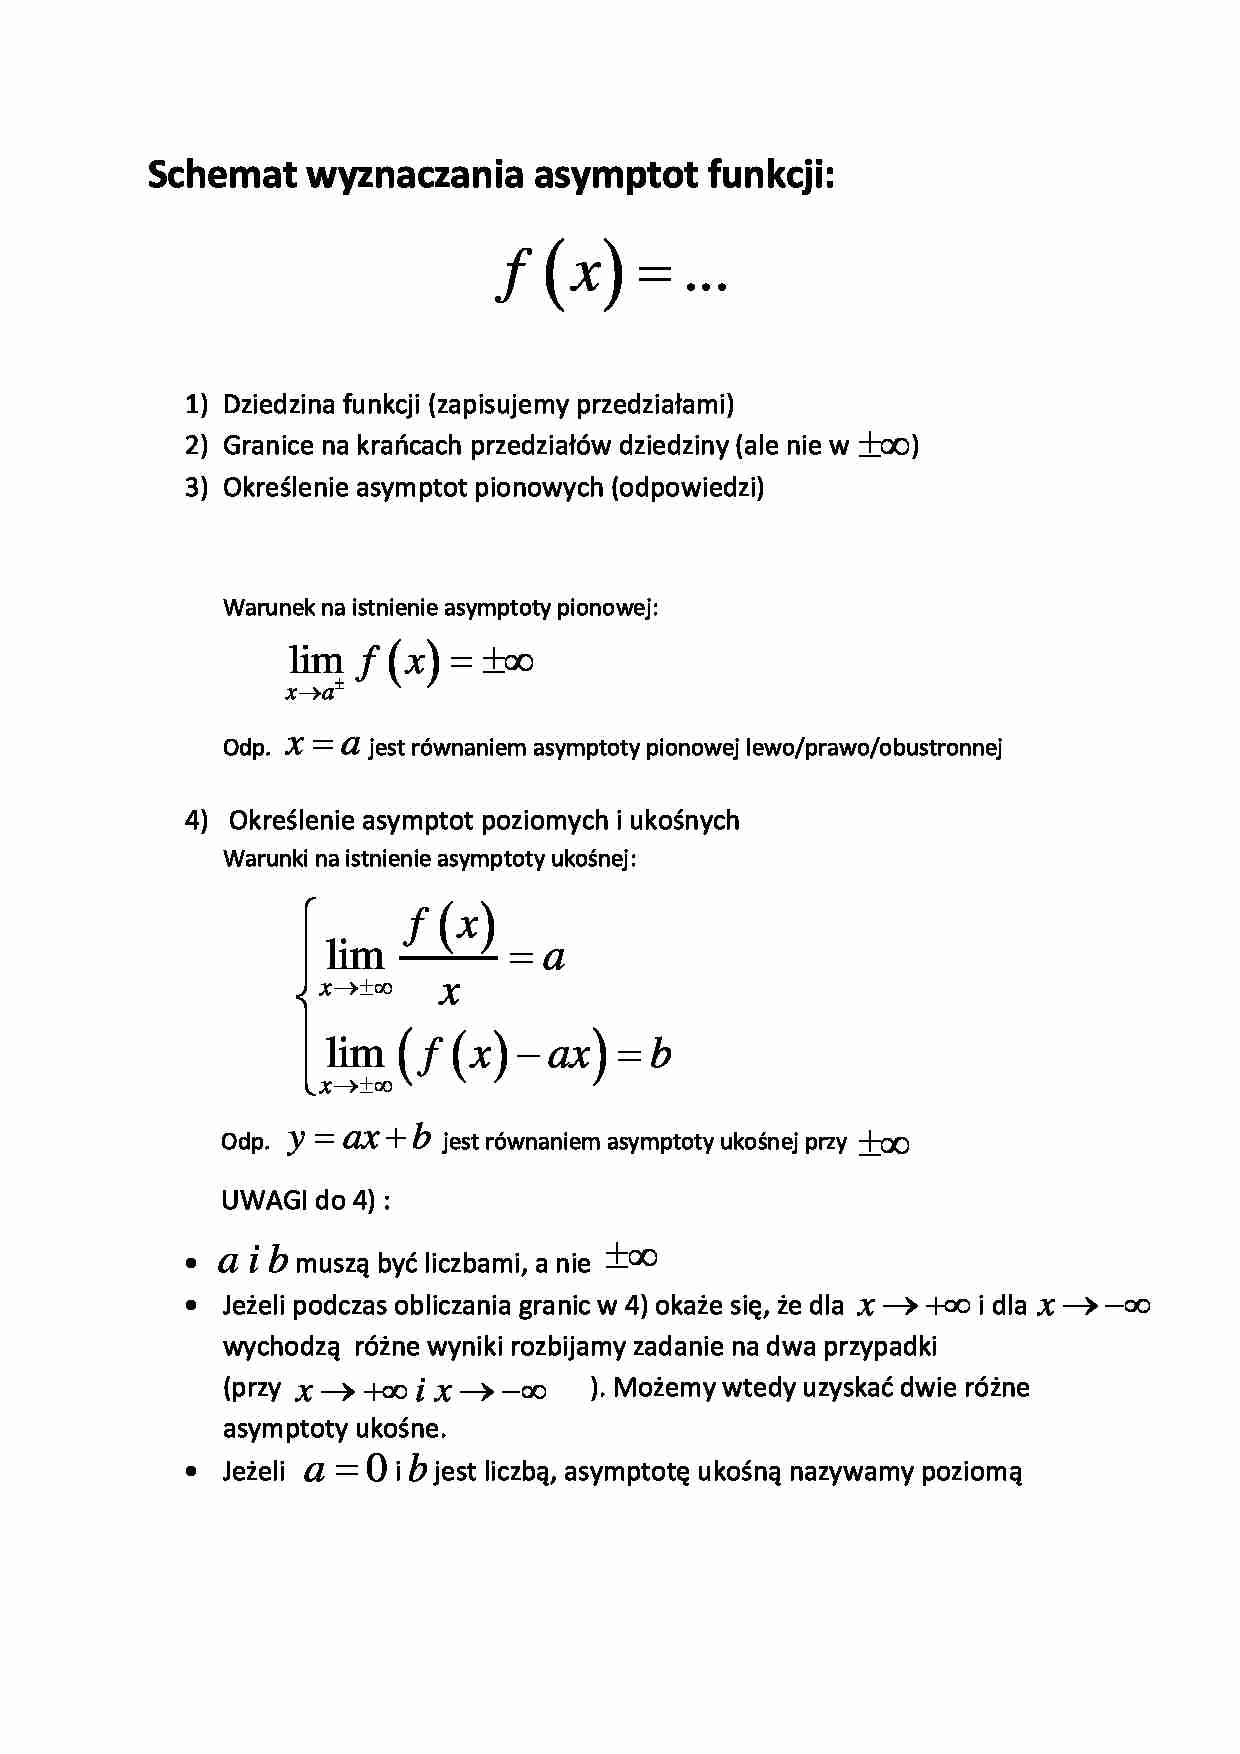 Schemat wyznaczania asymptomii funkcji - wykład - strona 1